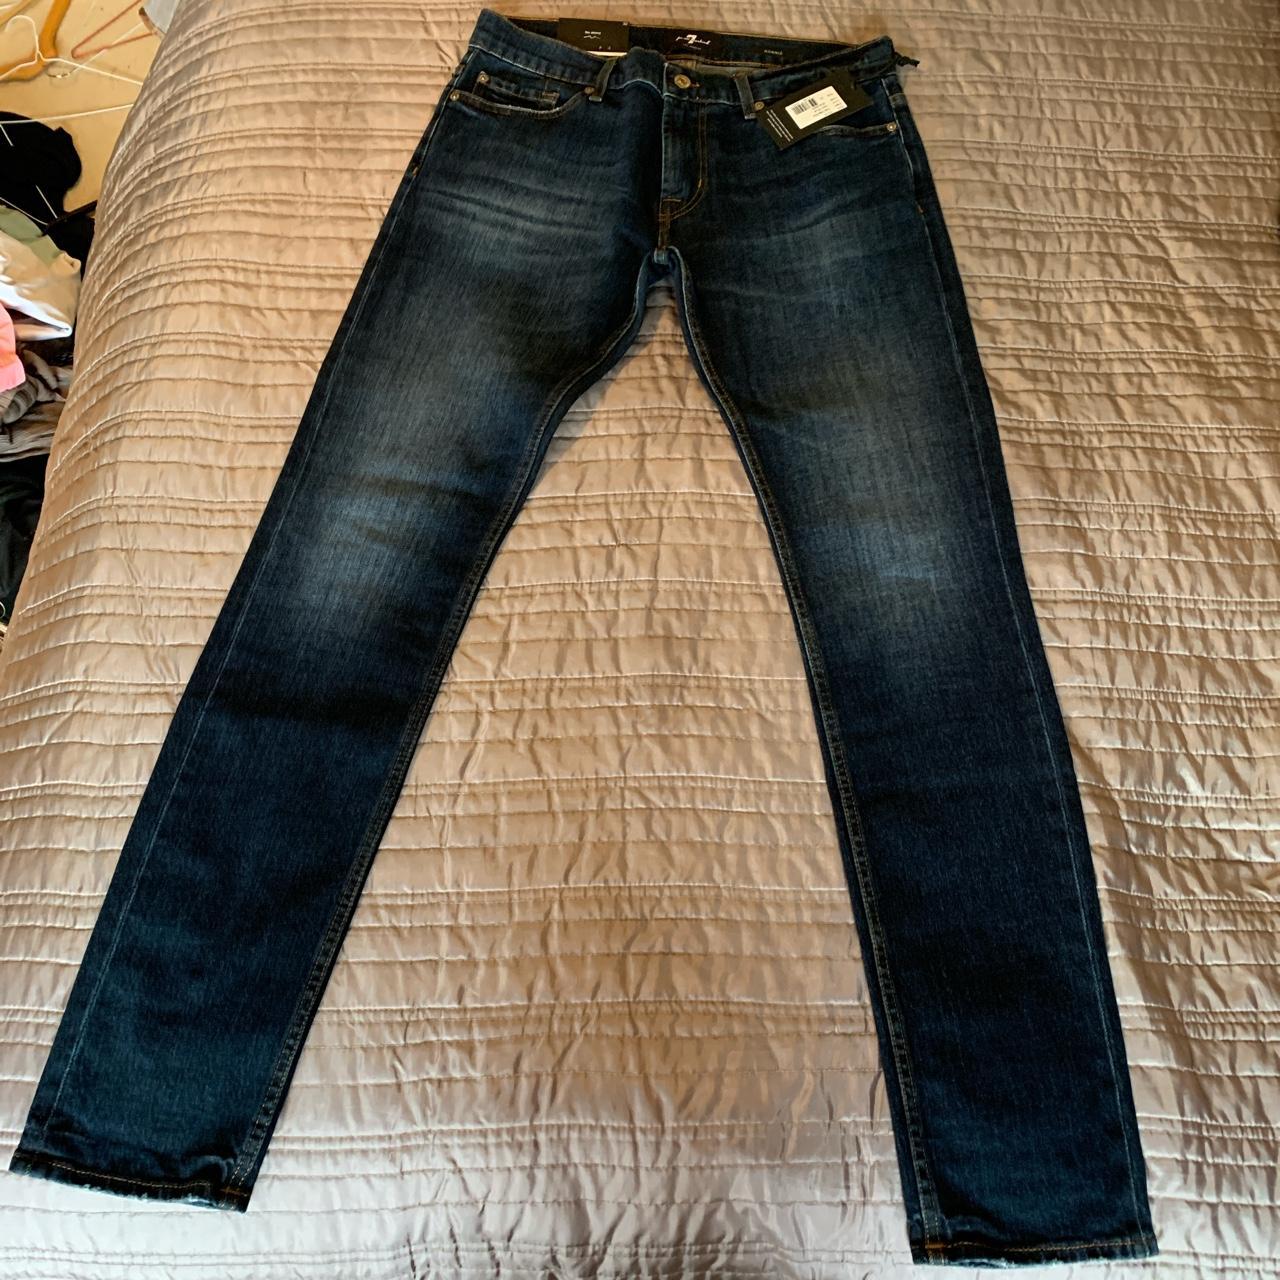 Men’s 7 for all man kind jeans - Brand new unworn... - Depop